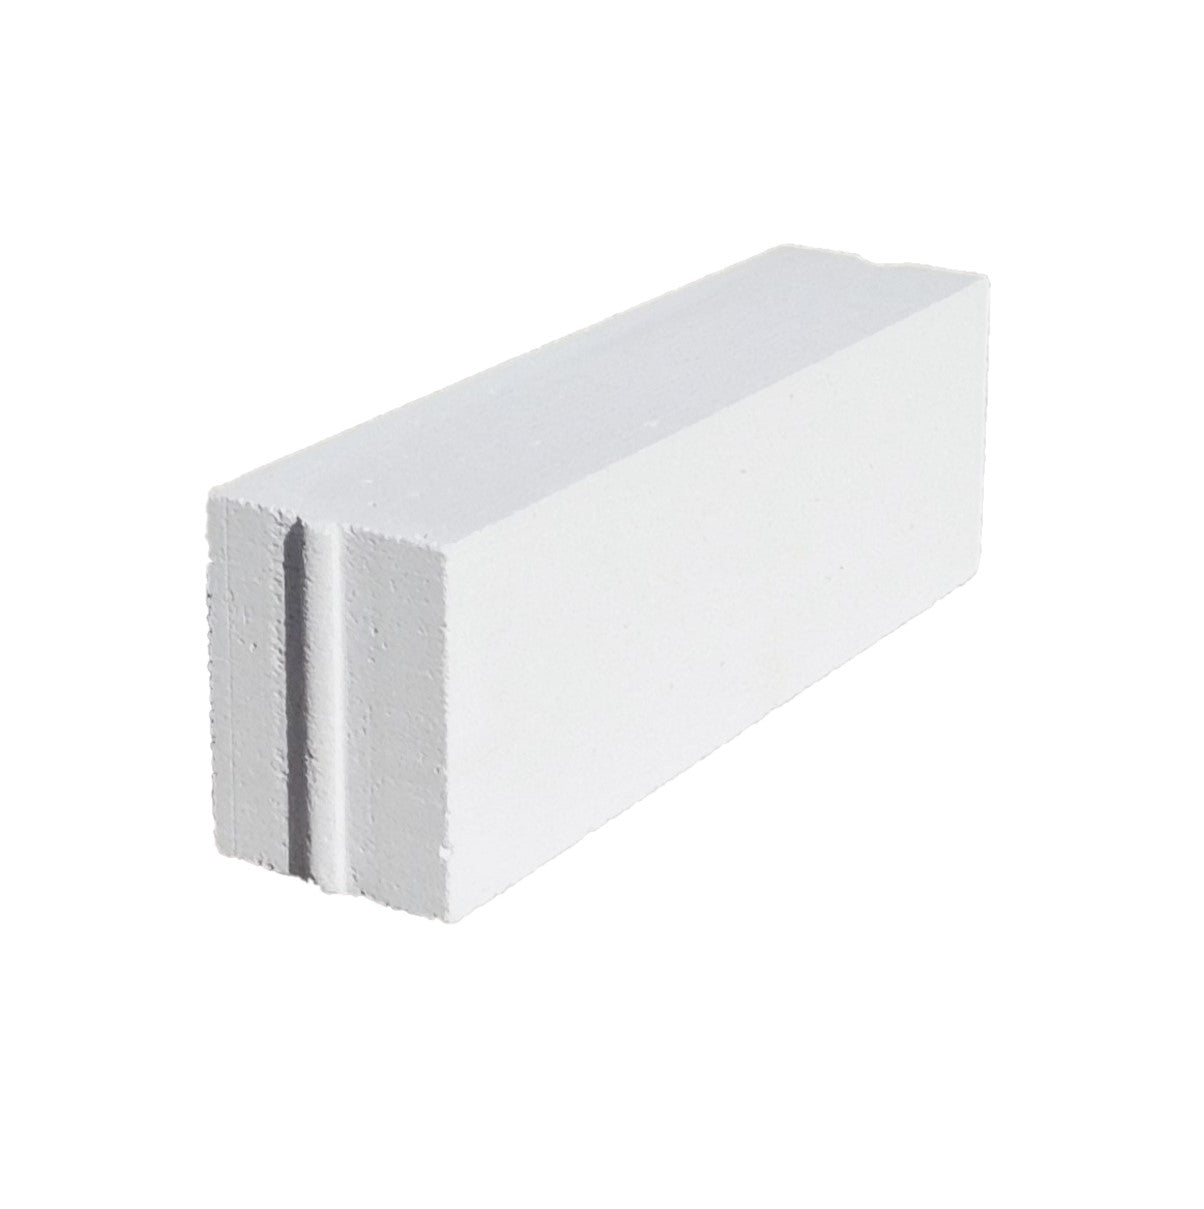 Aerated concrete block 60x20x15 cm HplusH